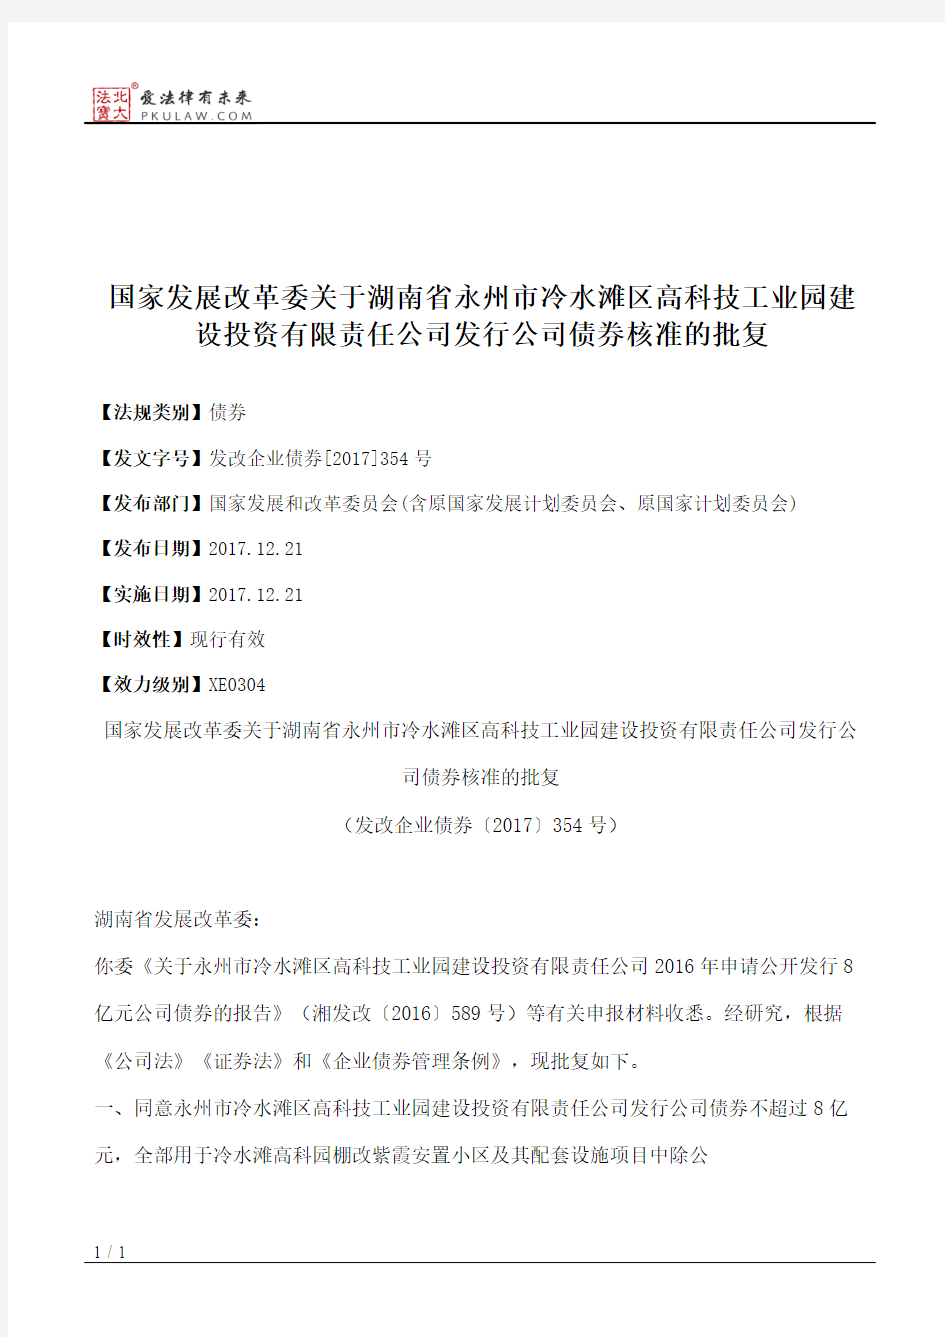 国家发展改革委关于湖南省永州市冷水滩区高科技工业园建设投资有